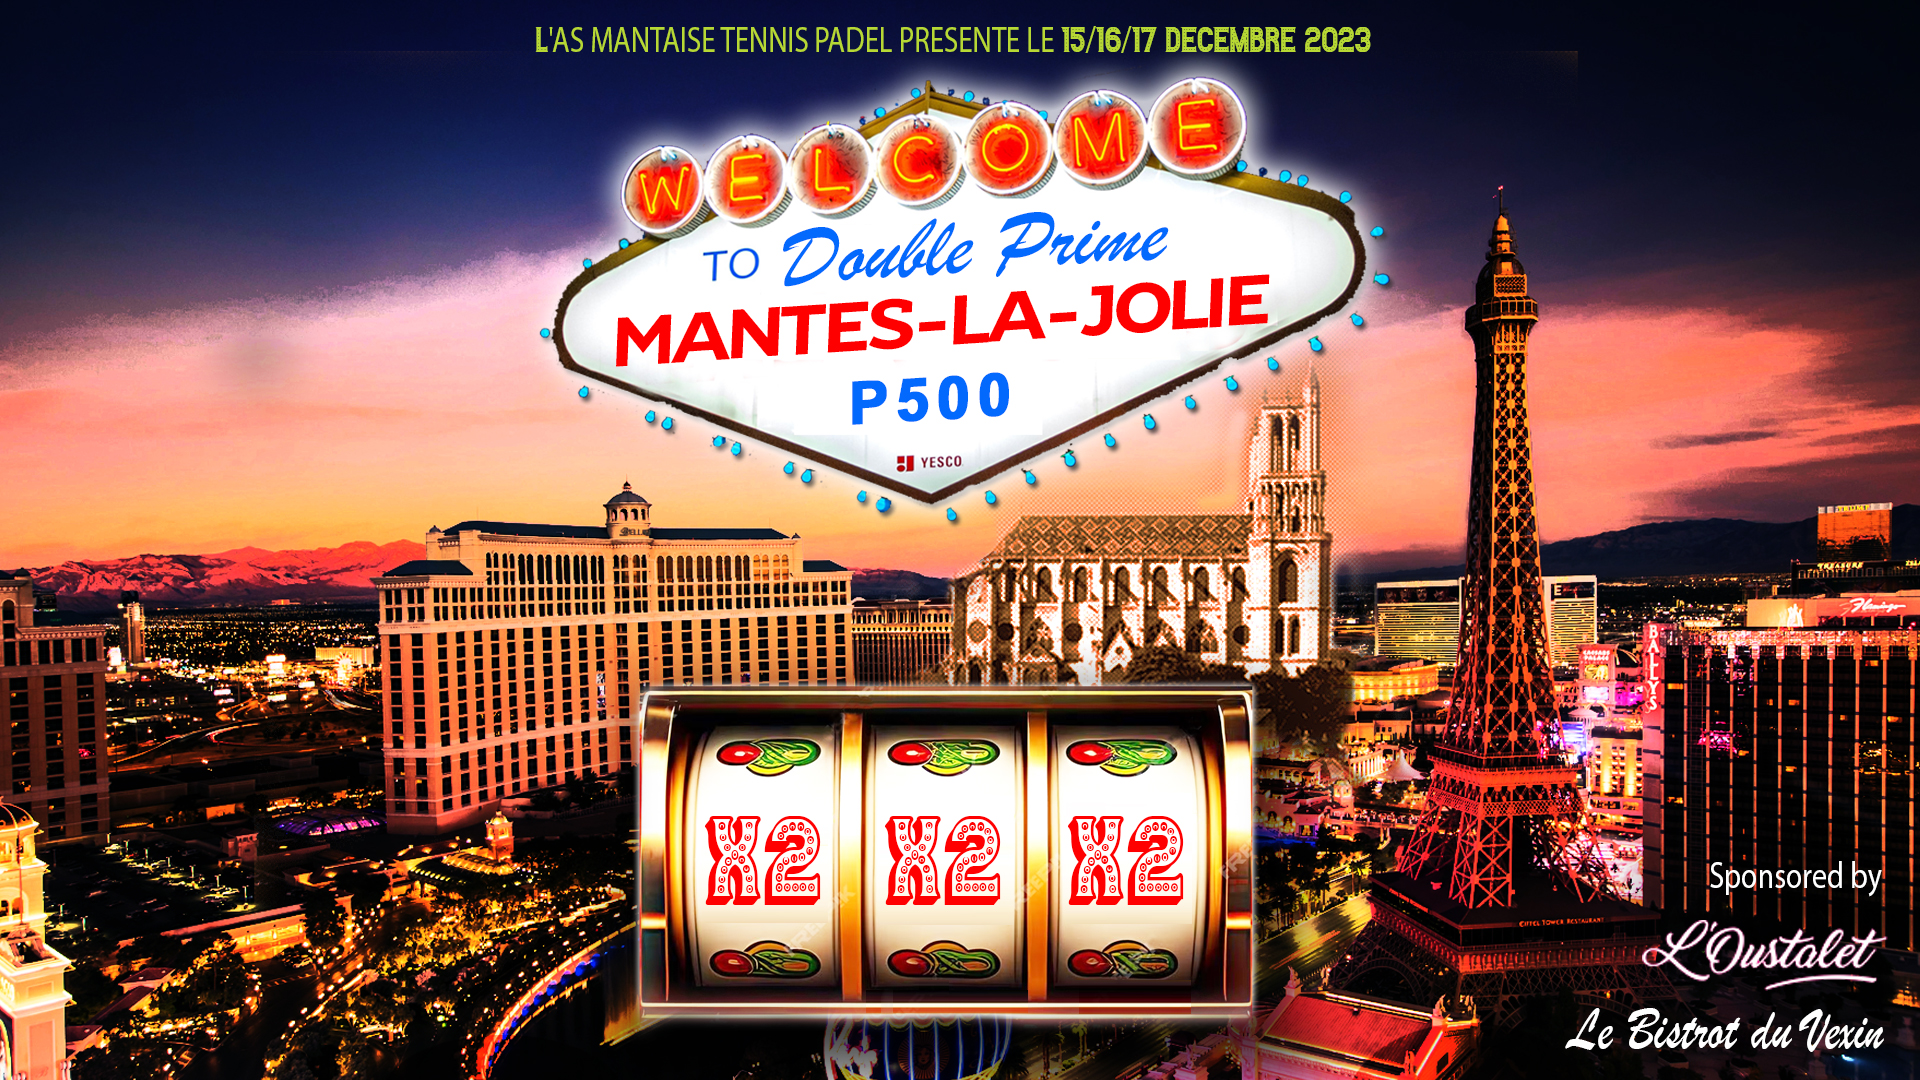 P500 “Double Prime” Mantes-la-Jolie by L’Oustalet